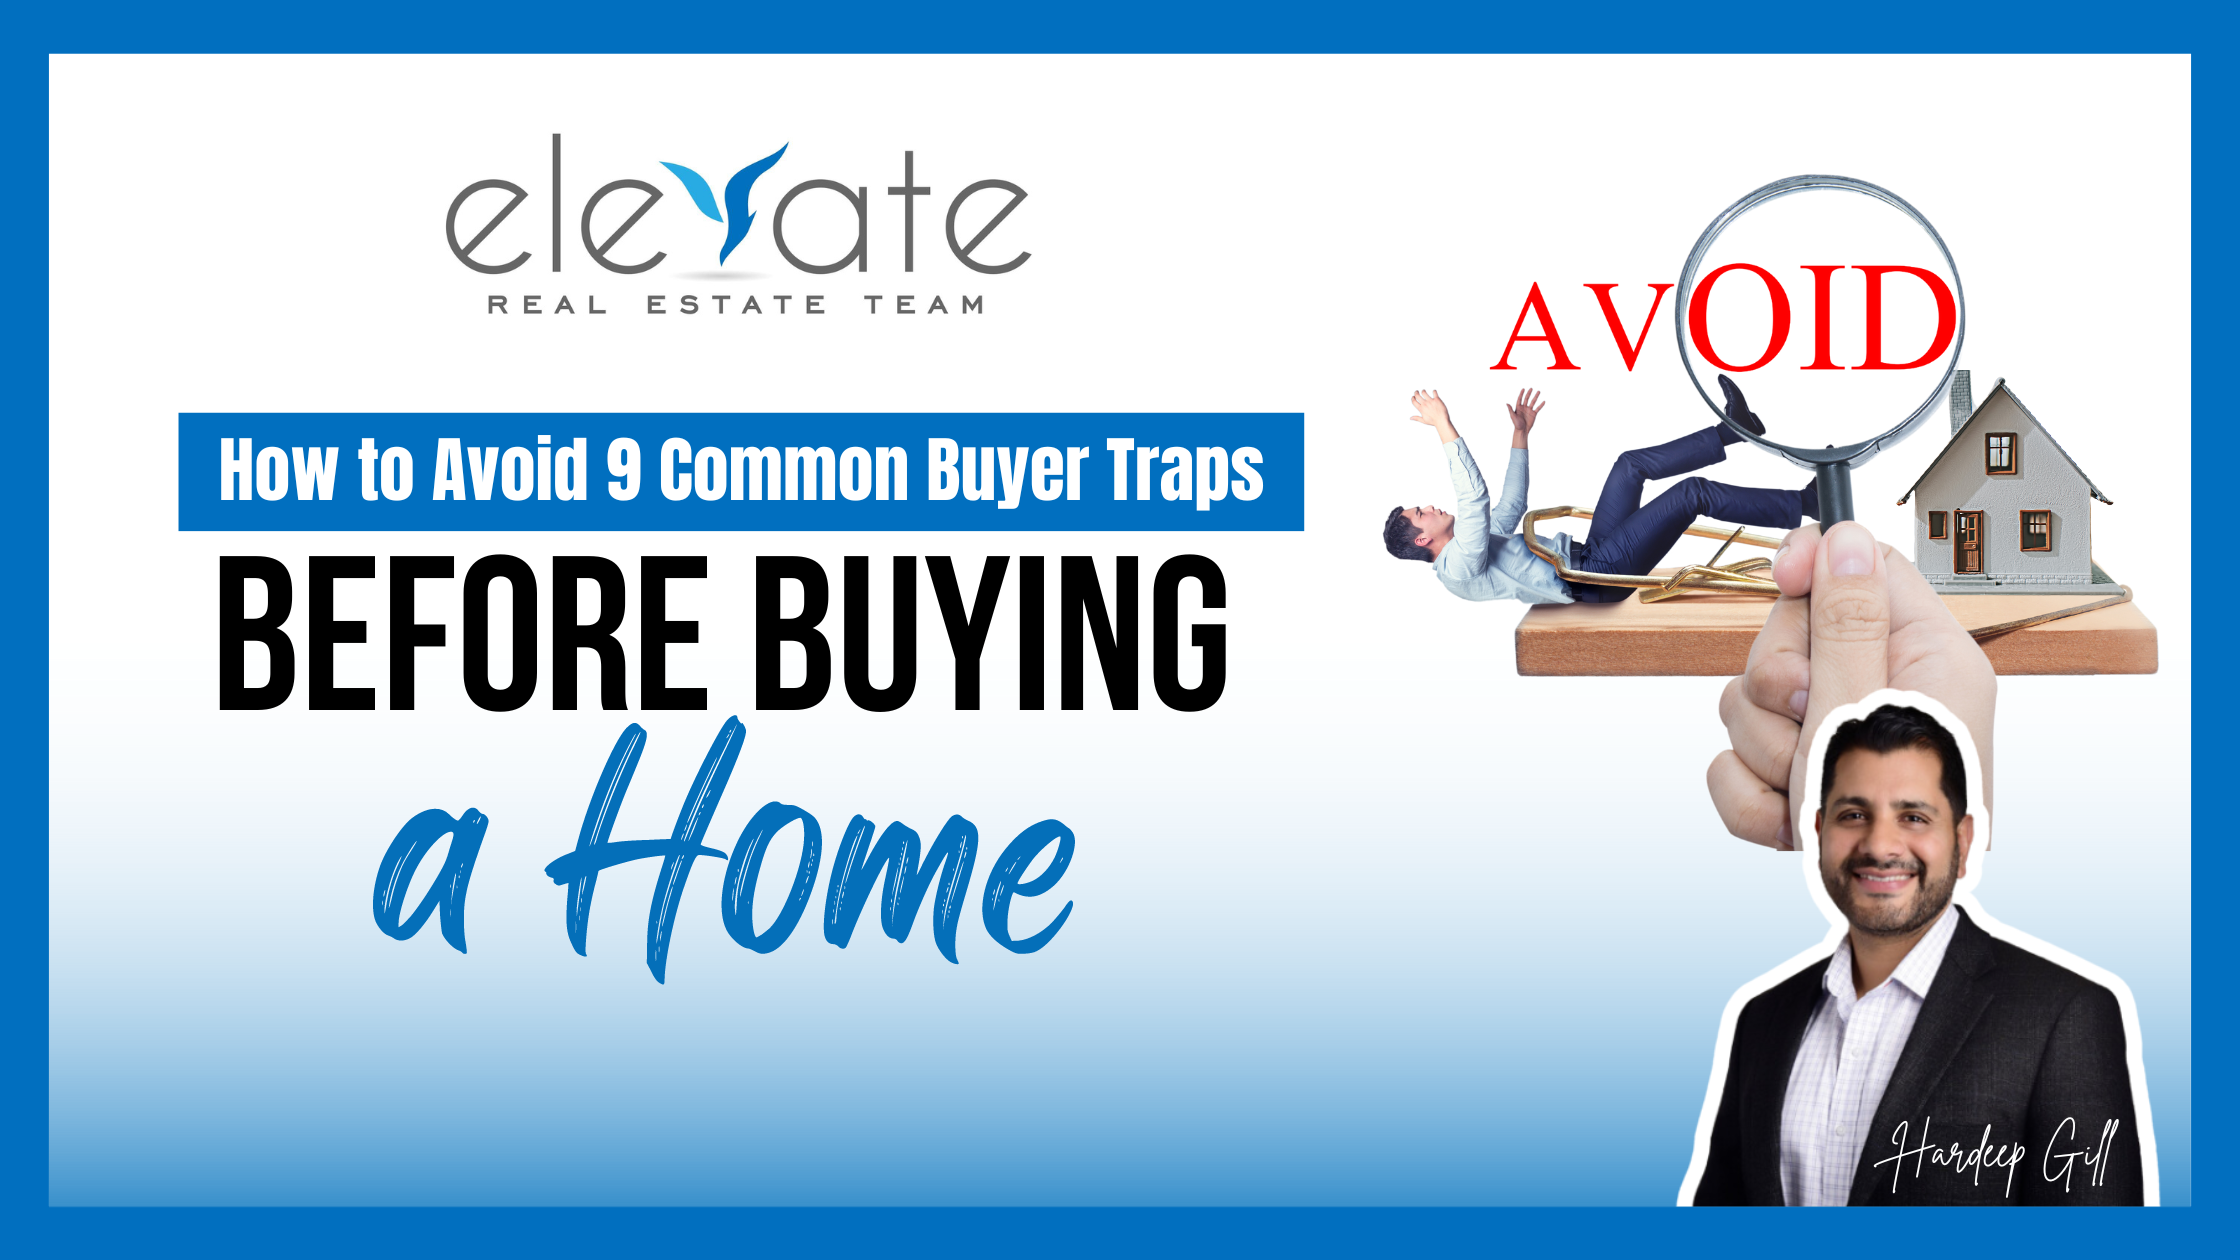 Avoiding Common Buyer Traps